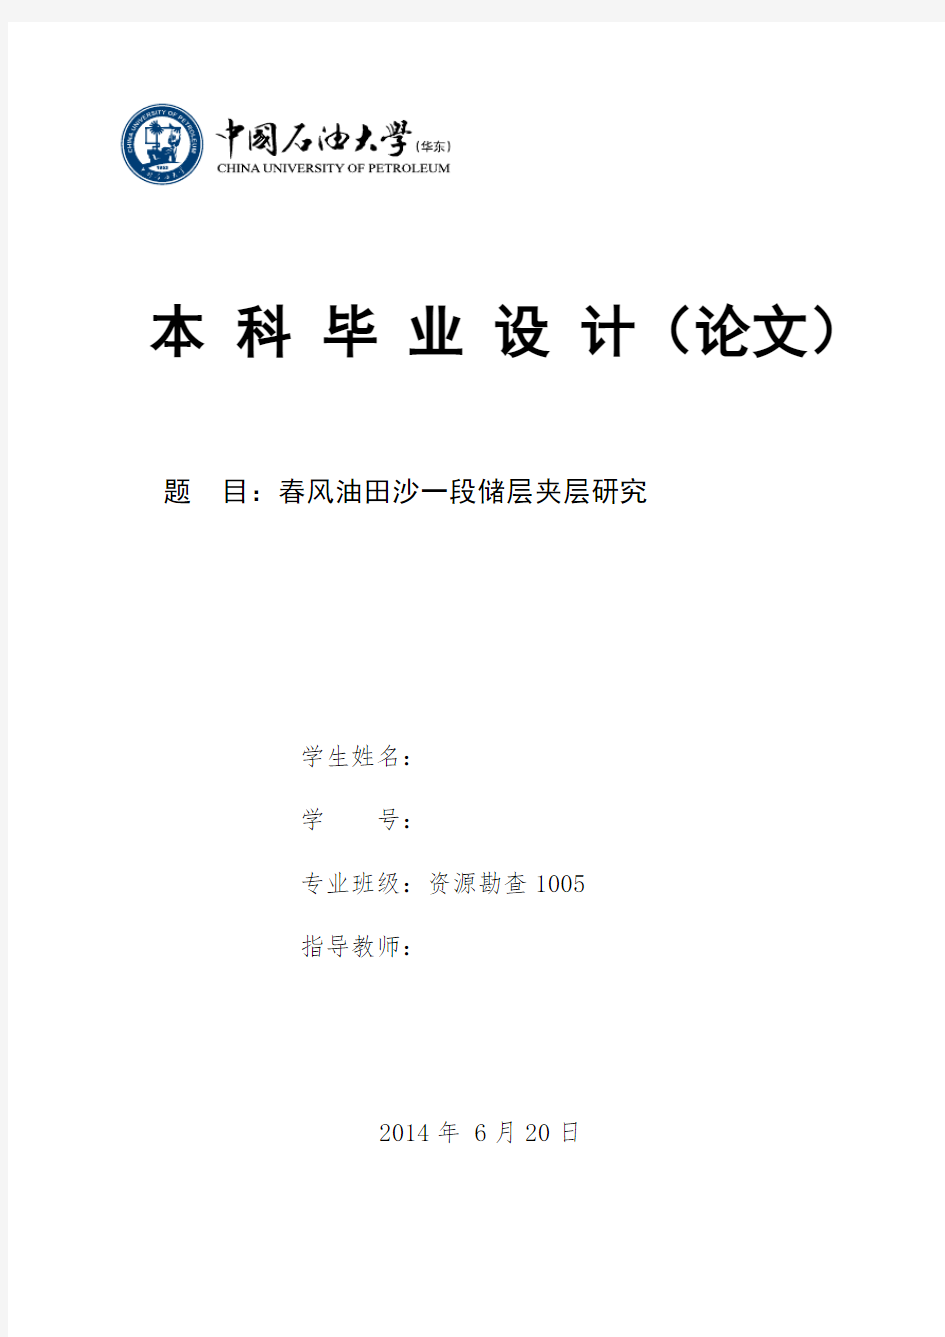 中国石油大学(华东)本科毕业设计(论文)模板(2014)